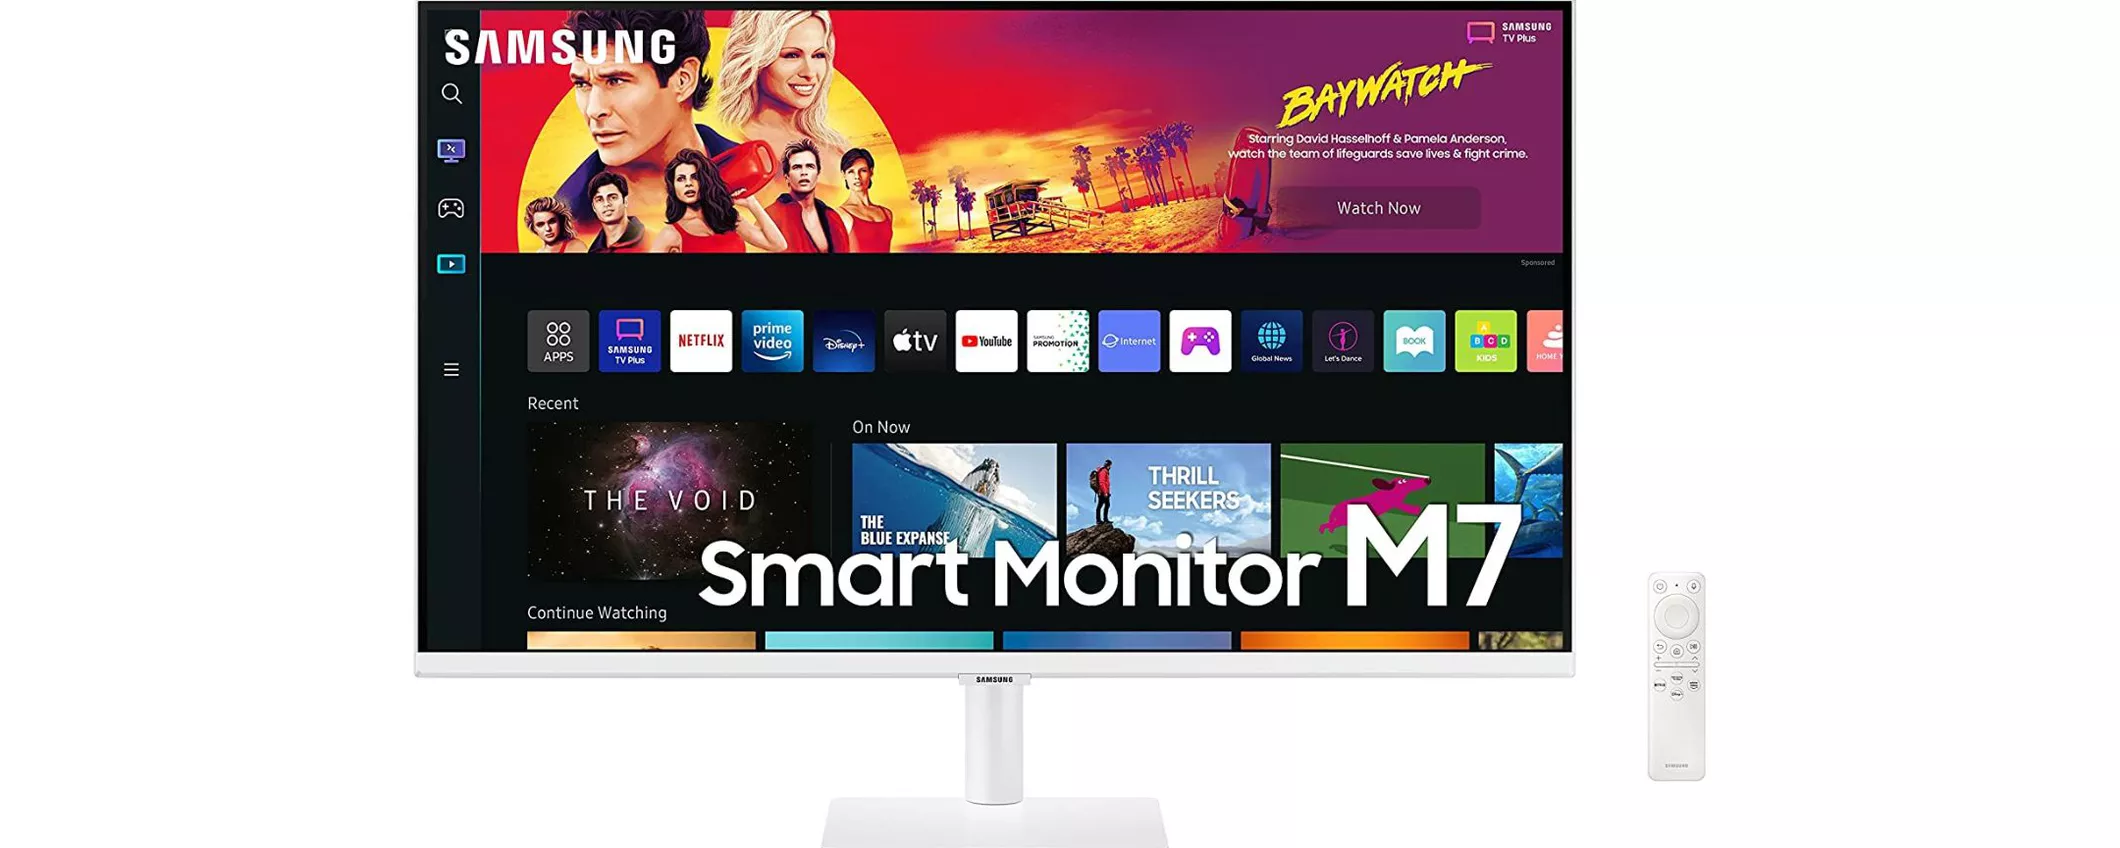 Samsung Smart Monitor M7 in offerta speciale su Amazon